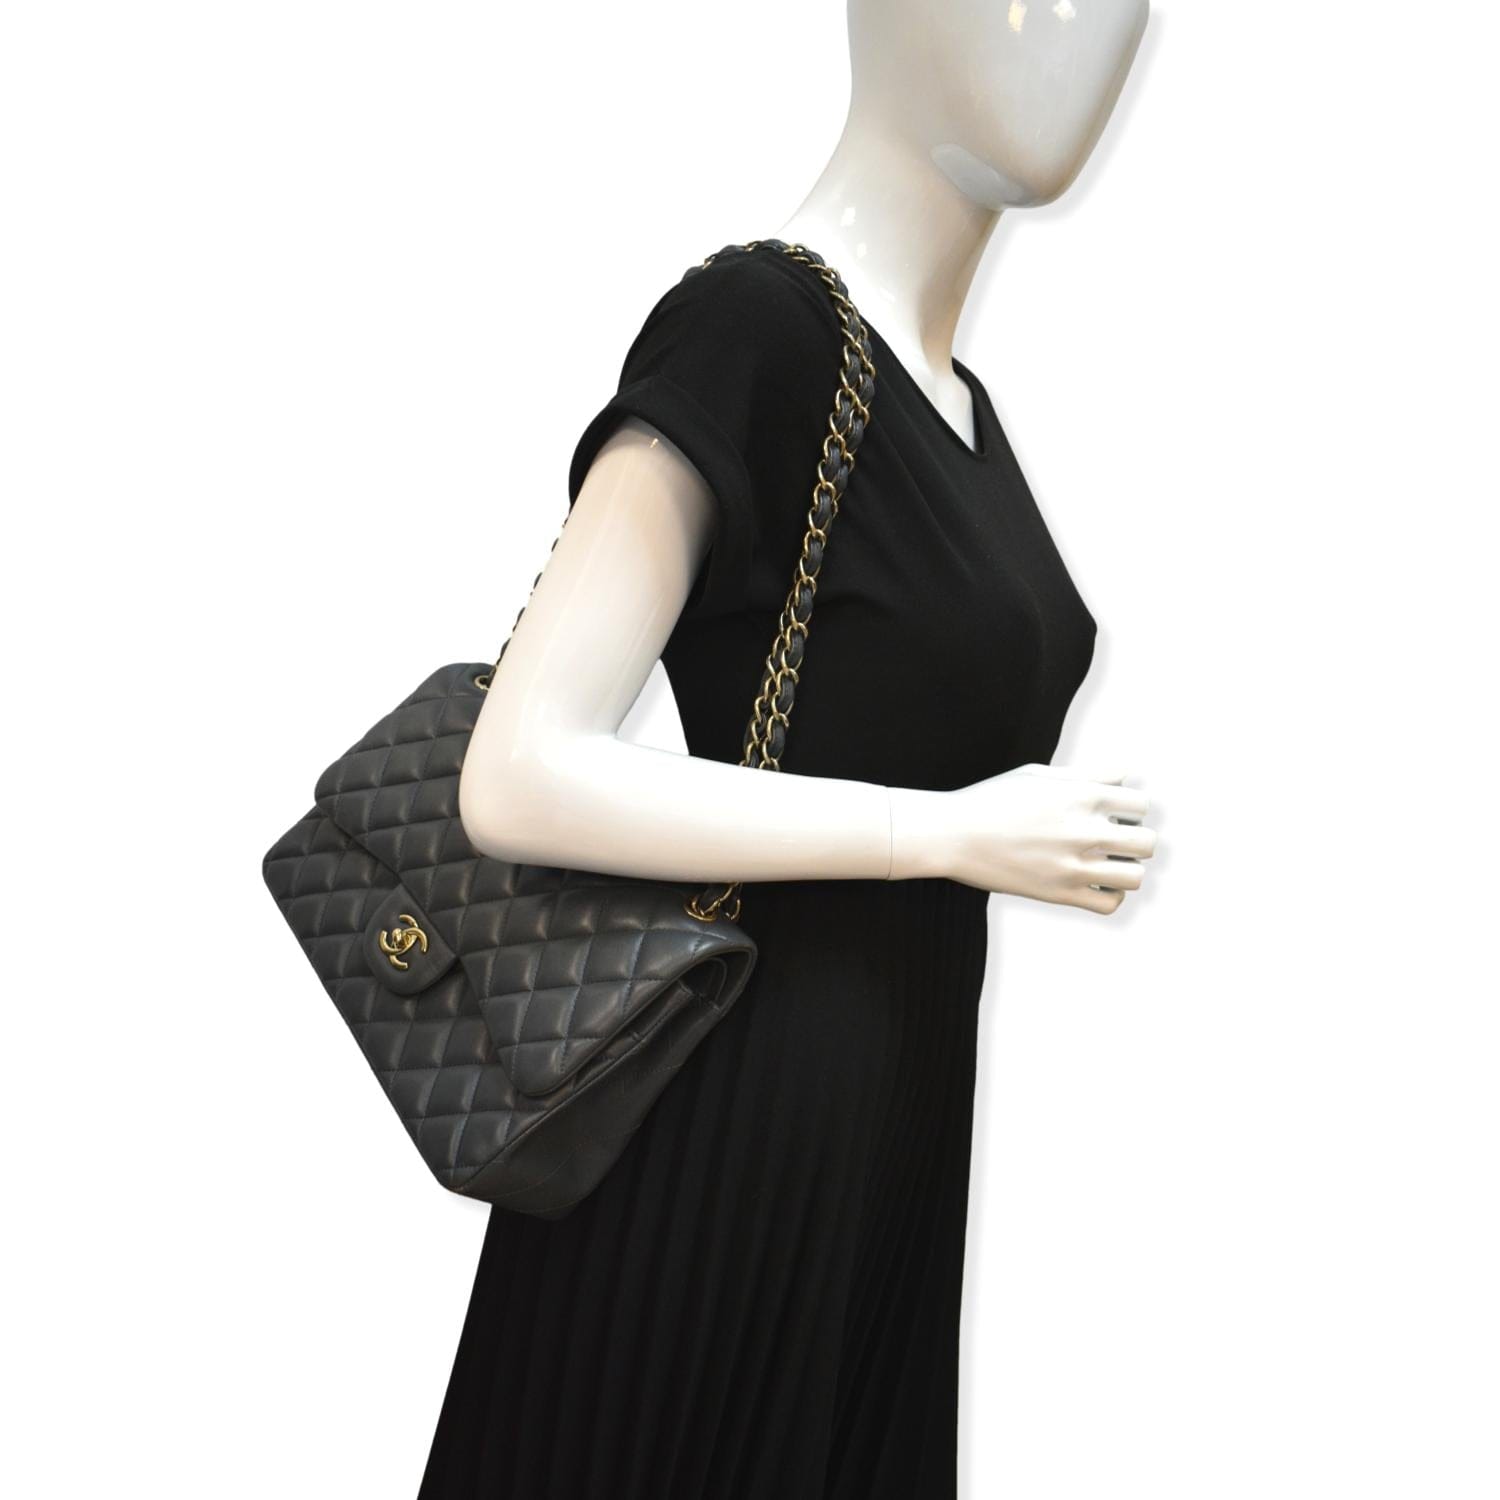 Chanel Classic Jumbo Double Flap Shoulder Bag